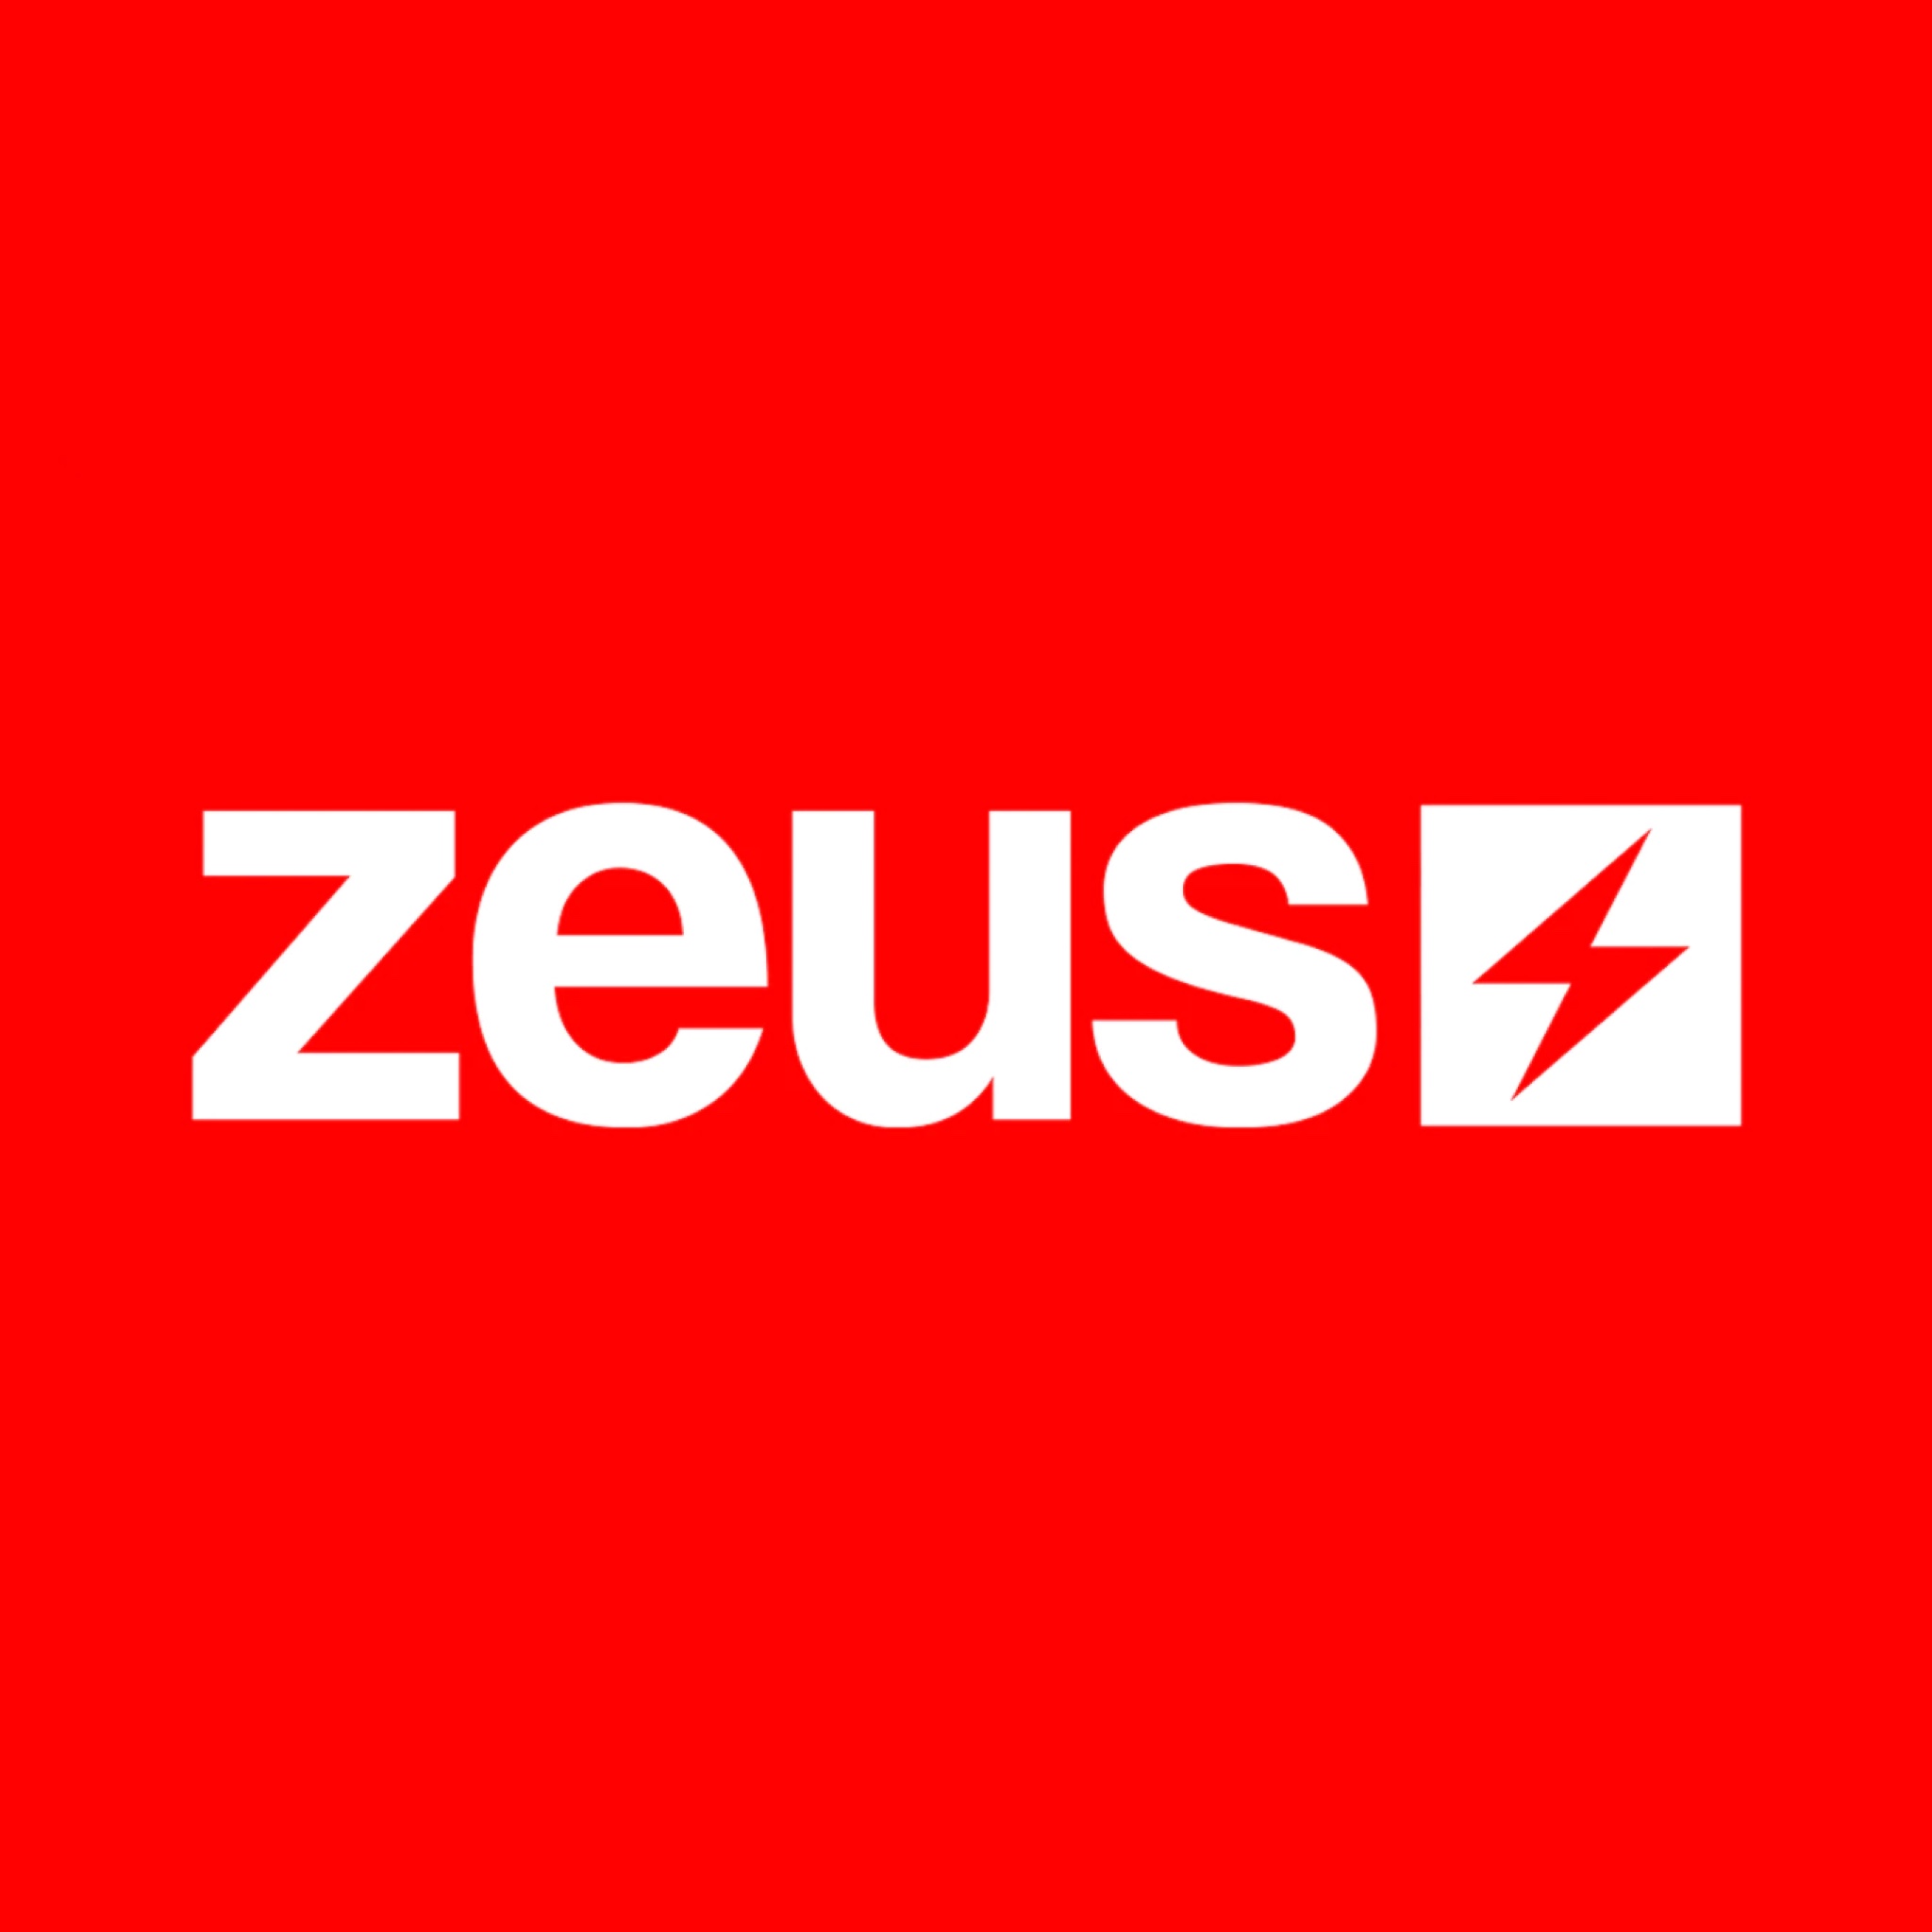 United States Altered State Productions ajansı, Zeus Network için, dijital pazarlamalarını, SEO ve işlerini büyütmesi konusunda yardımcı oldu